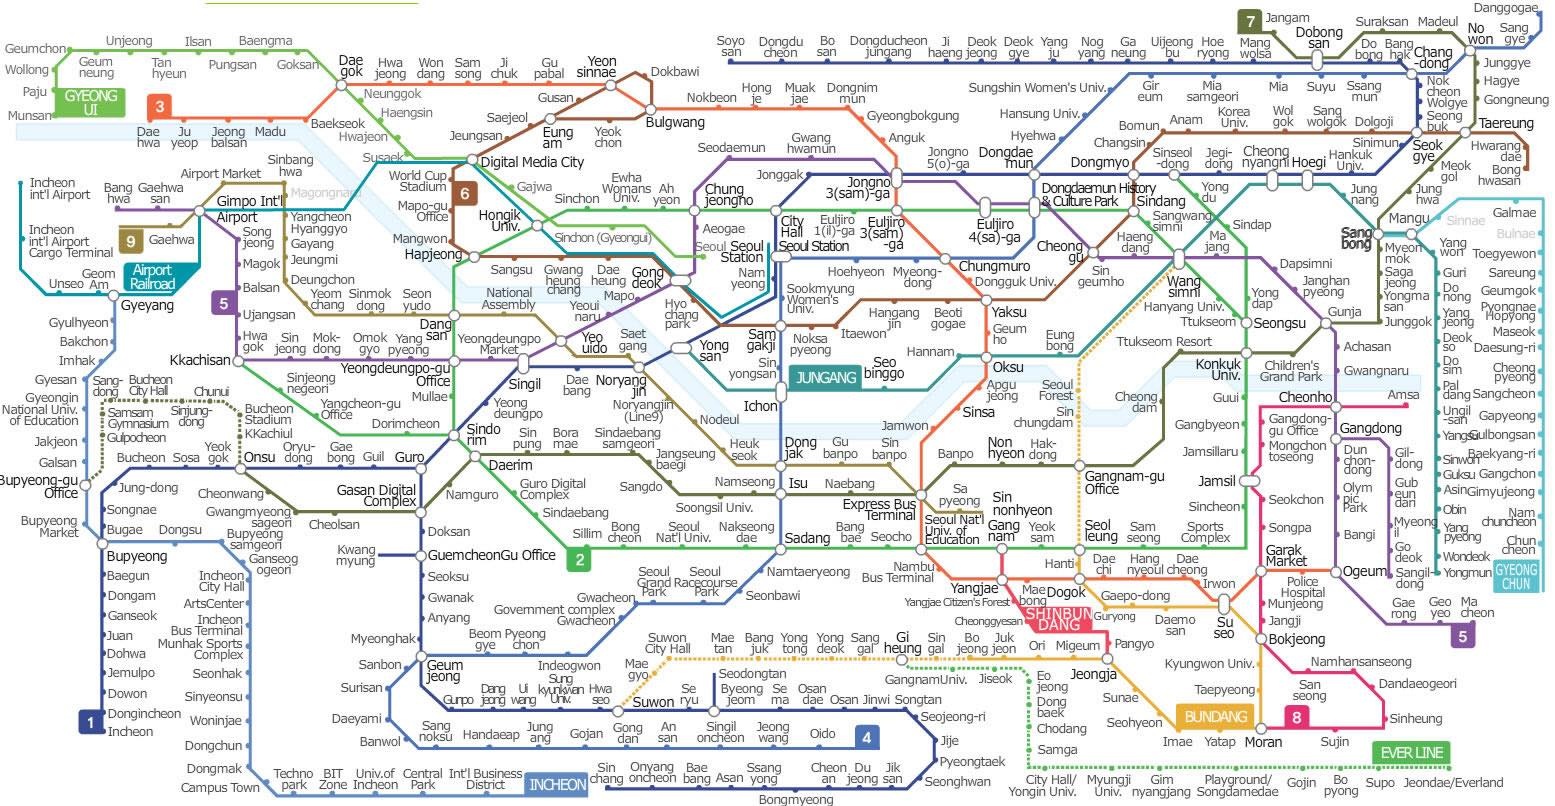 Hướng dẫn sử dụng tàu điện ngầm Seoul: Không cần lo ngại nếu bạn chưa từng sử dụng tàu điện ngầm ở Seoul trước đây. Tất cả các chuyến tàu được báo trước thời gian và sự hiện đại của hệ thống dẫn đường cũng giúp cho việc di chuyển trở nên dễ dàng hơn. Hãy xem ảnh để tìm hiểu cách sử dụng tàu điện ngầm này một cách đơn giản và nhanh chóng.